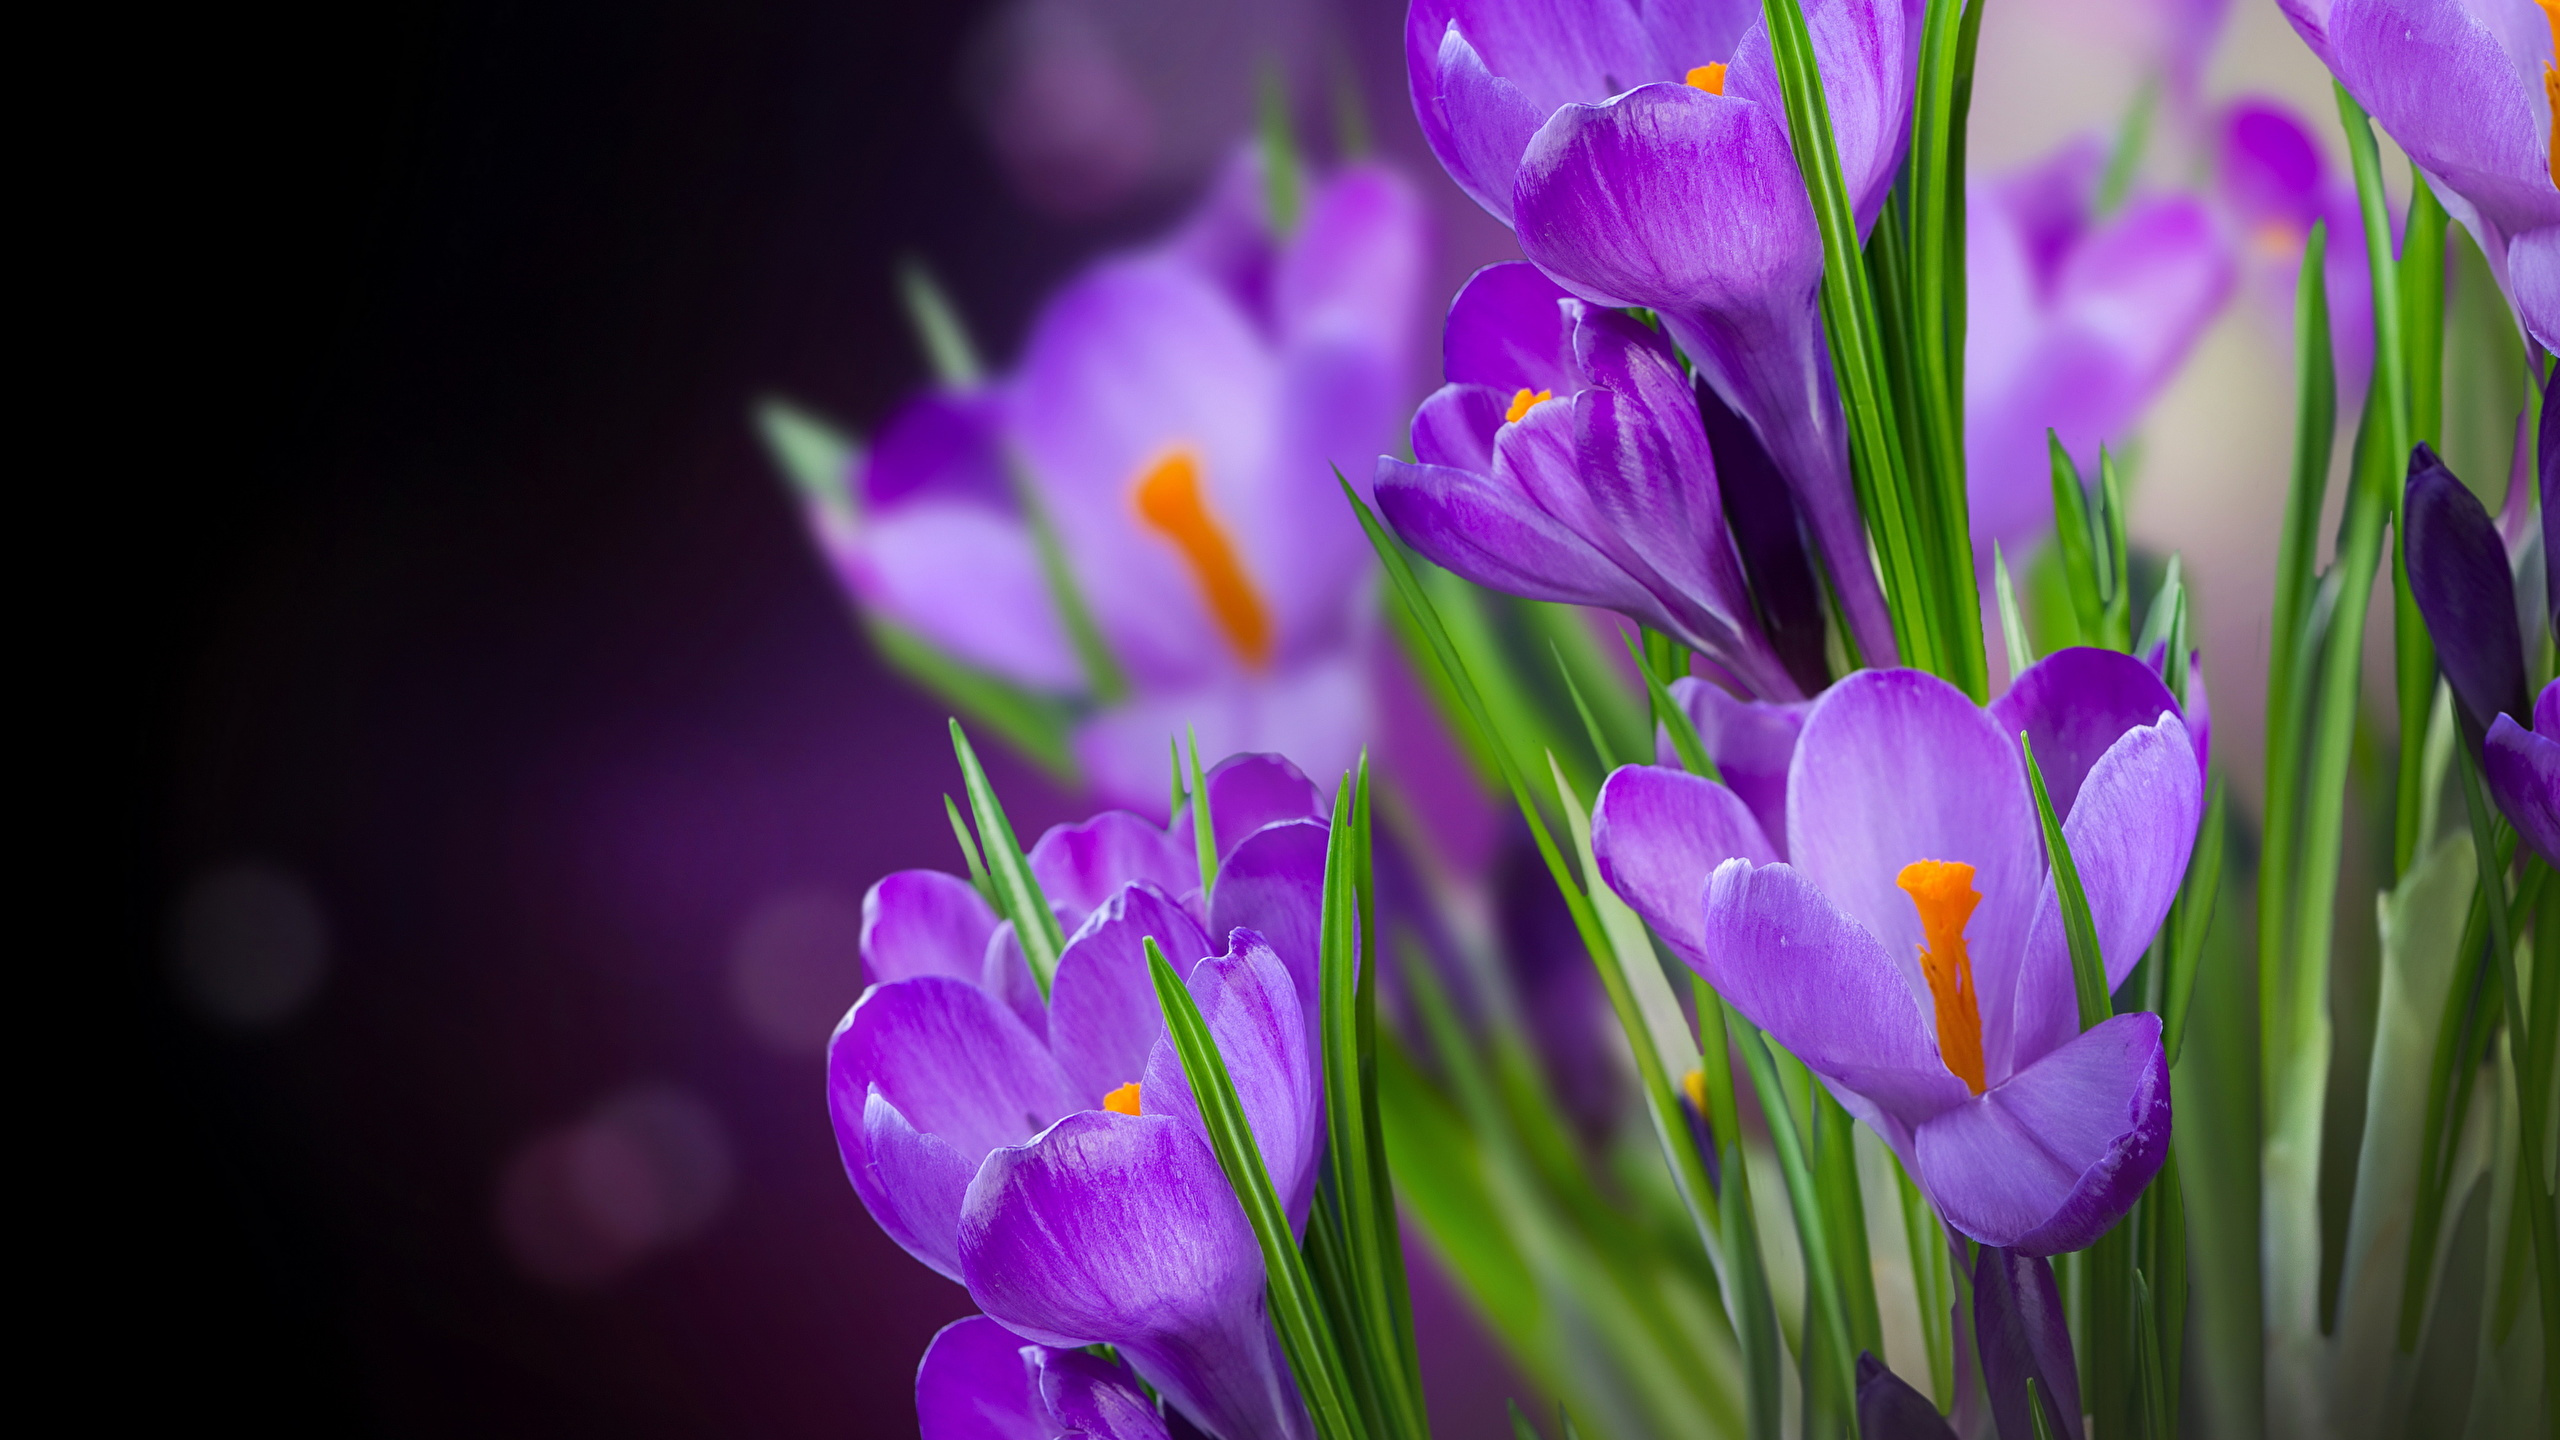 藏红花, 紫罗兰色, 紫色的, 显花植物, 弹簧 壁纸 2560x1440 允许